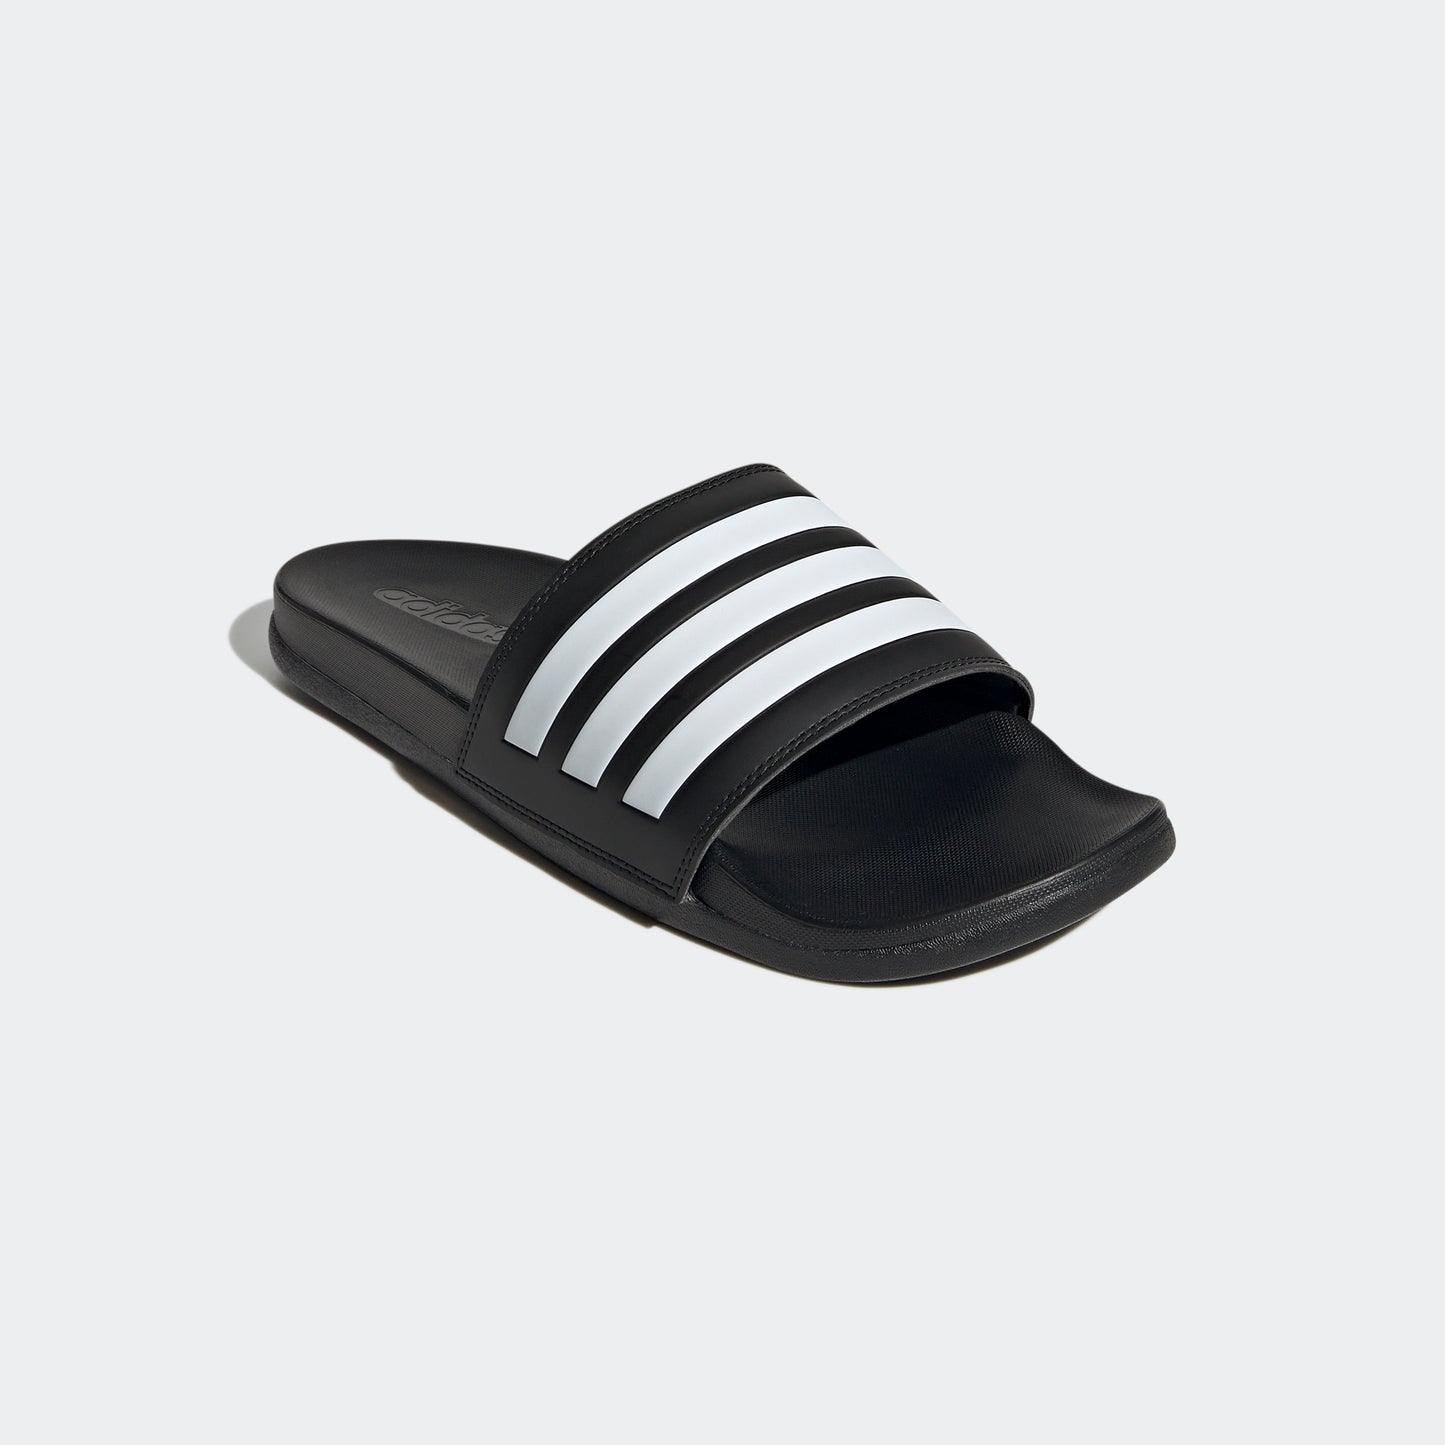 adidas Adult Unisex Adilette Comfort Slide Black / White / Black